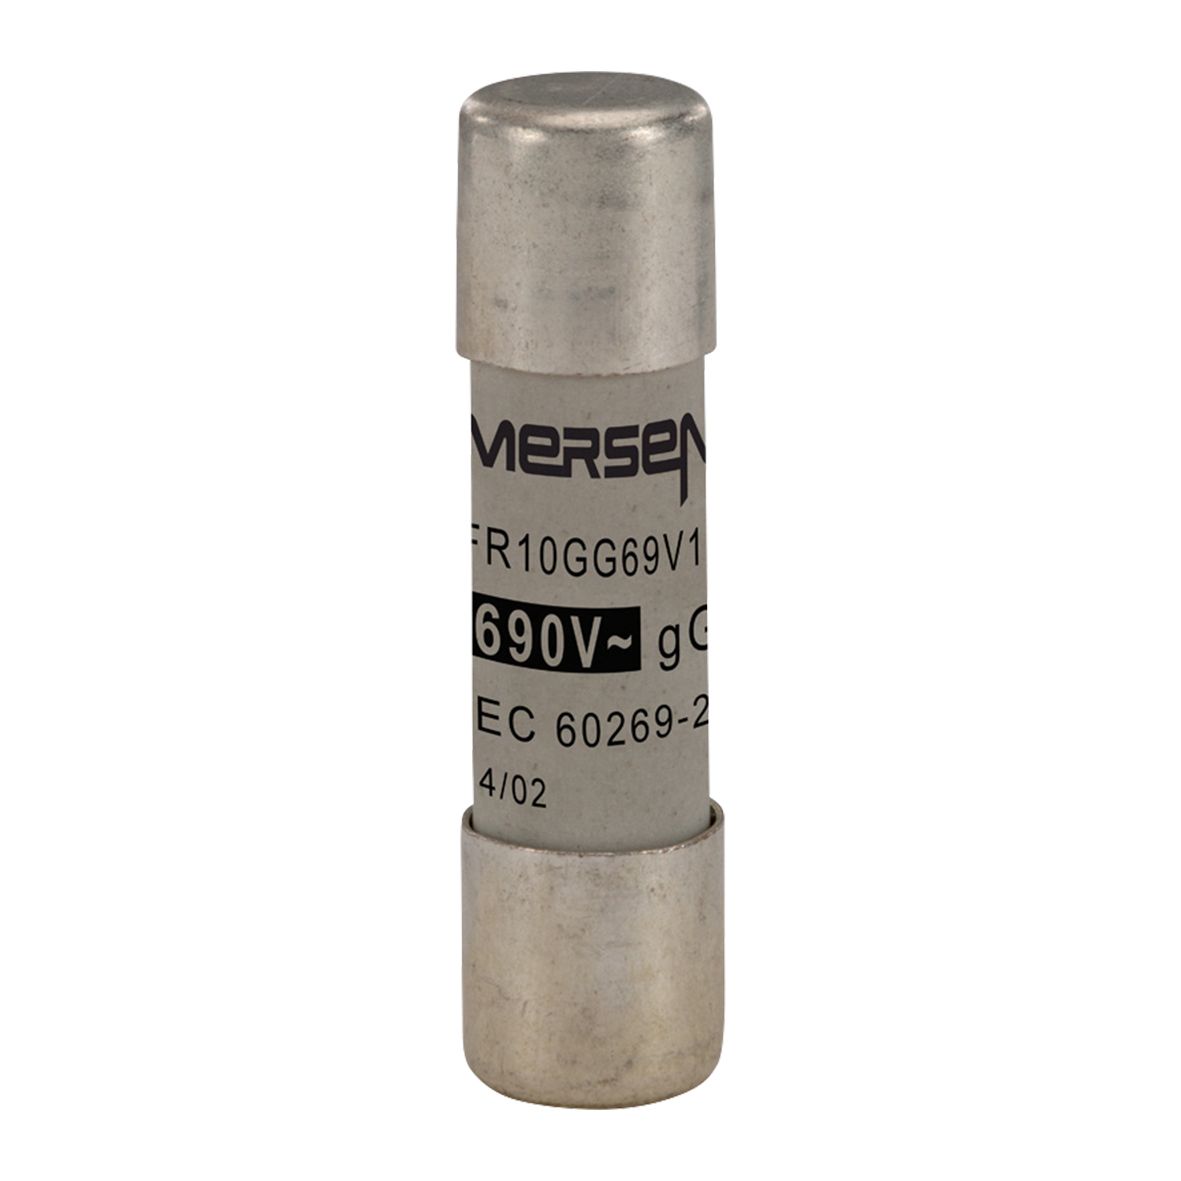 Y302793 - Cylindrical fuse-link gG 690VAC 10.3x38, 12A